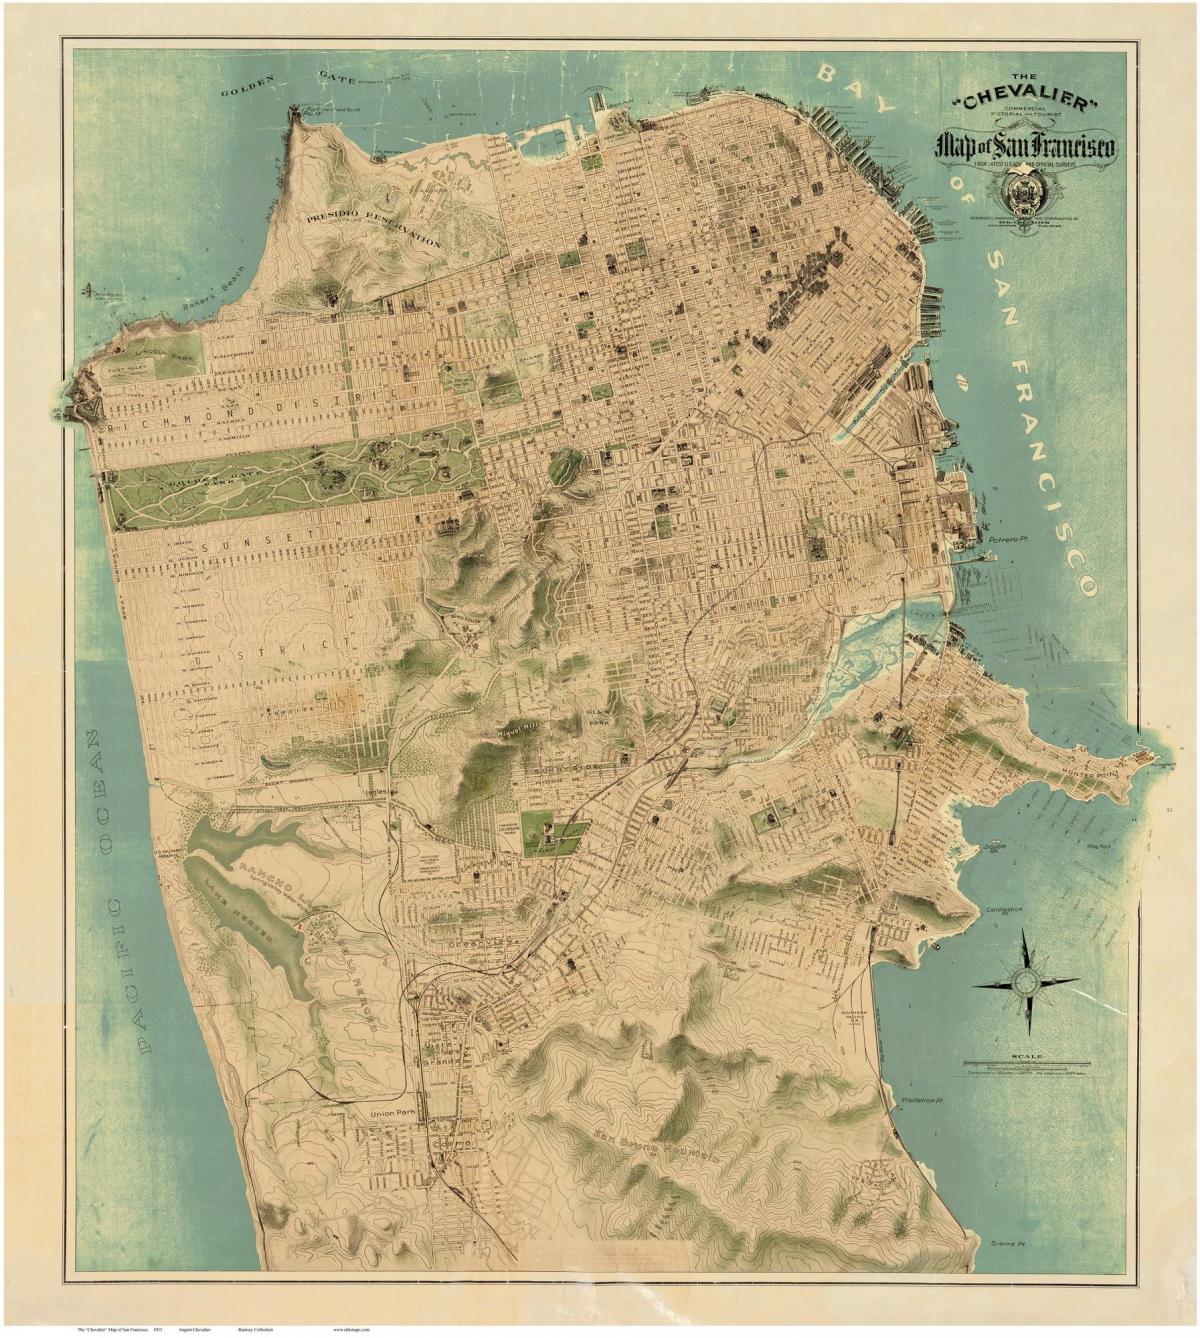 Peta dari San Francisco 